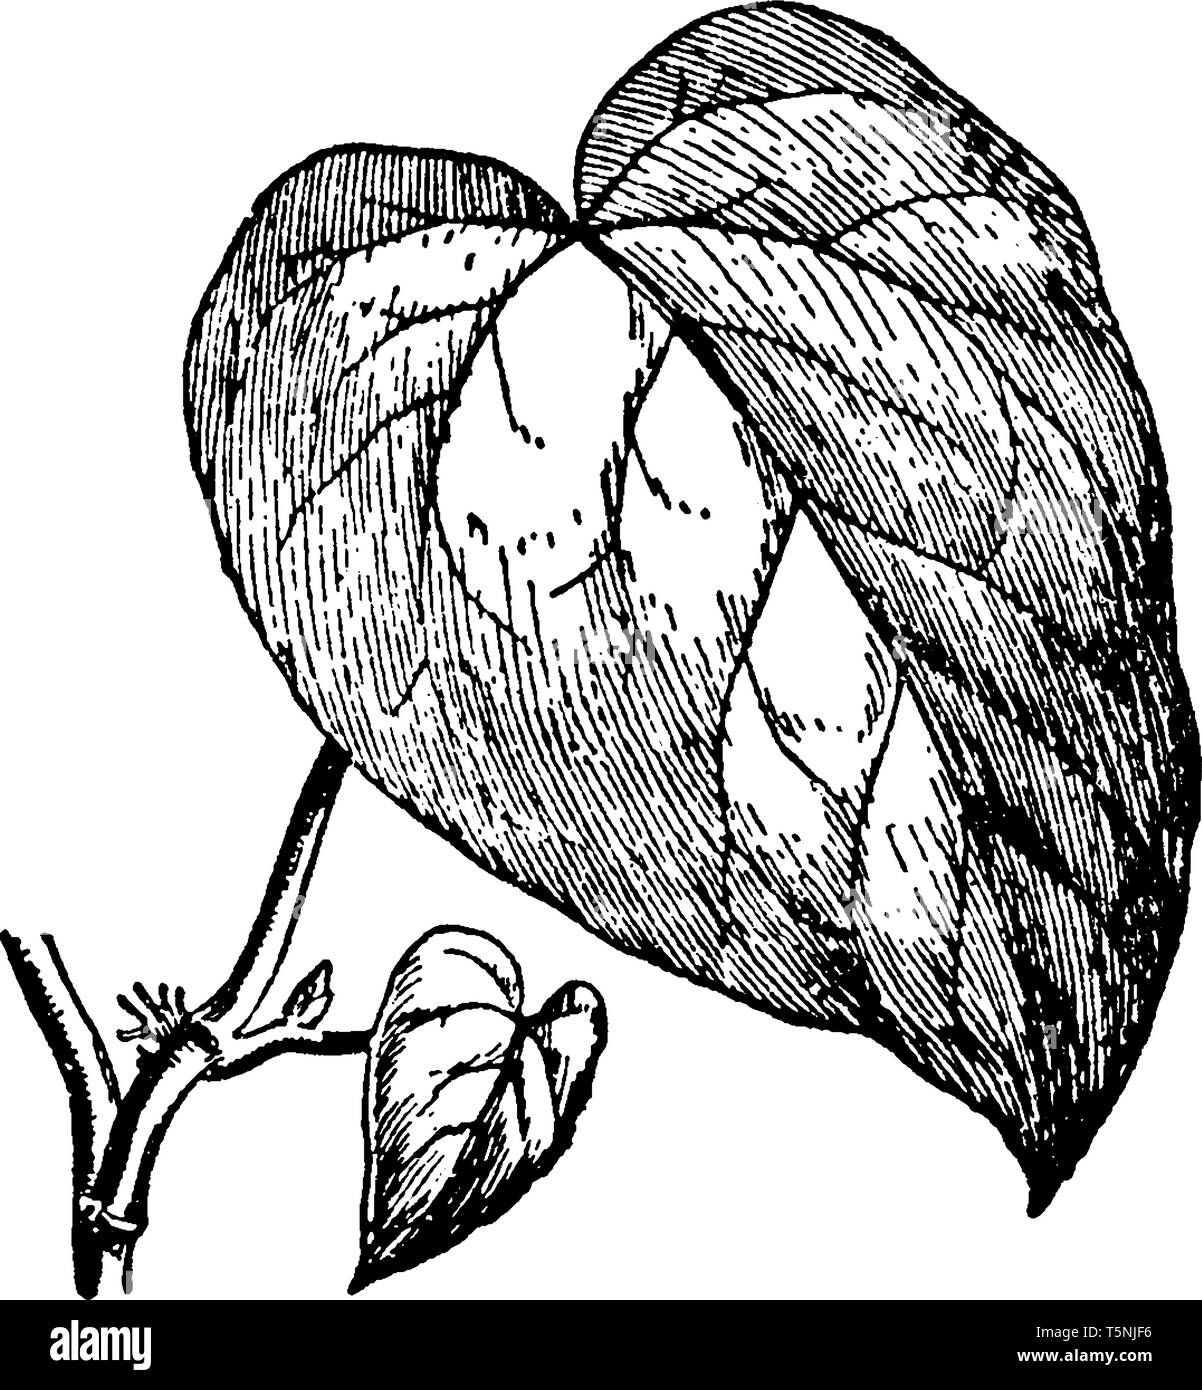 Hedera colchica es una especie de hiedra que es nativa de Oriente Próximo y Oriente Medio. Las hojas son lobuladas de cinco menores en hojas y tallos, escalada progresiva Ilustración del Vector